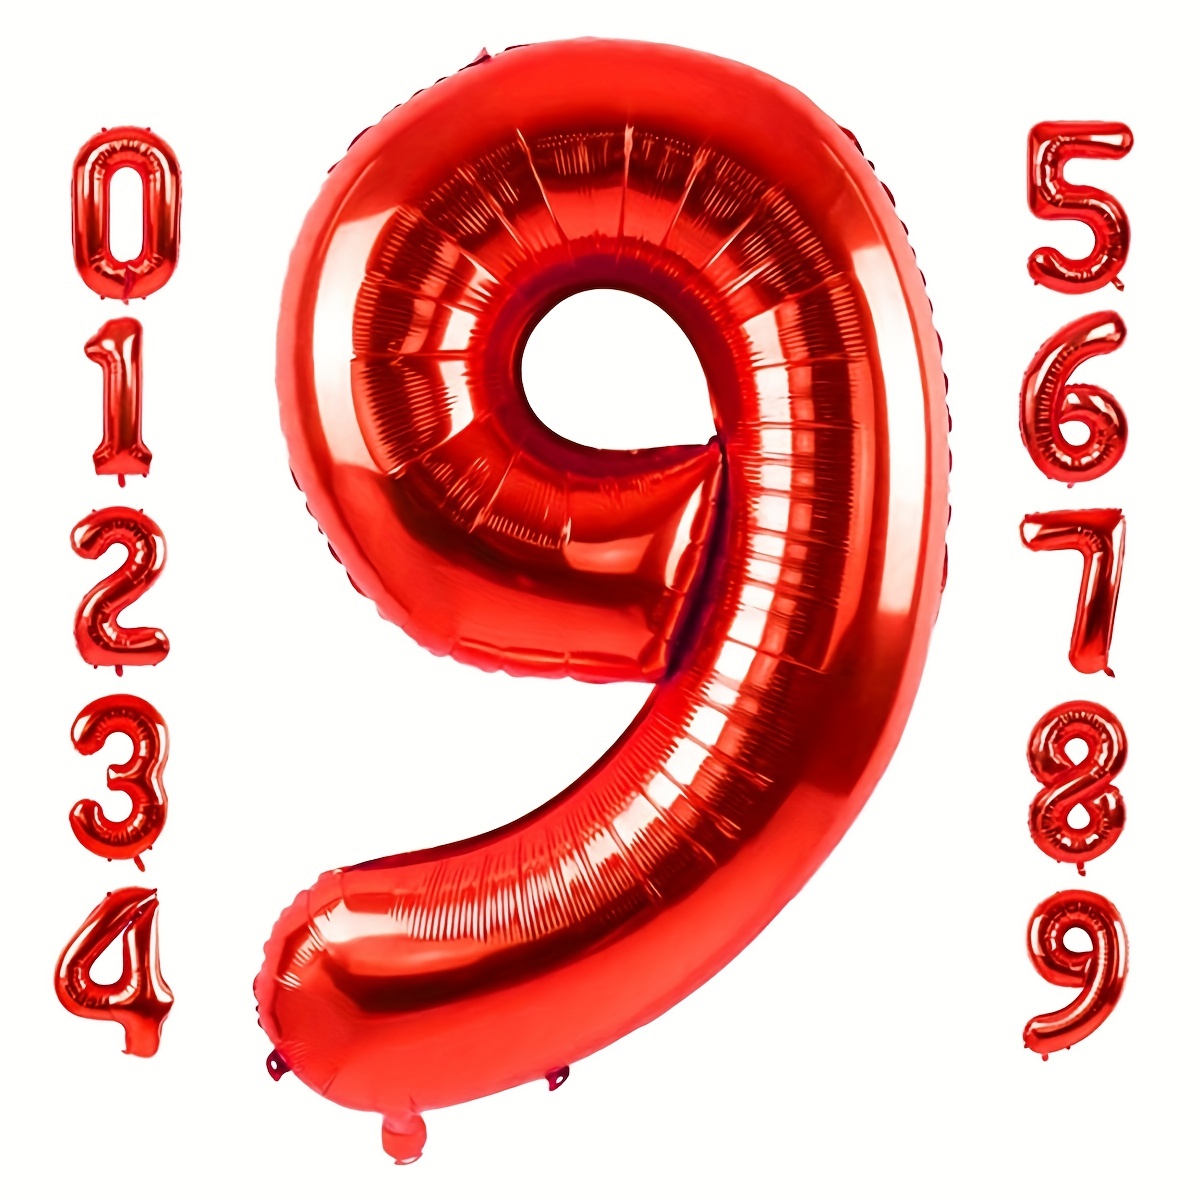 Velas para Cumpleaños Numero 1 con Borde Rojo de 6cm